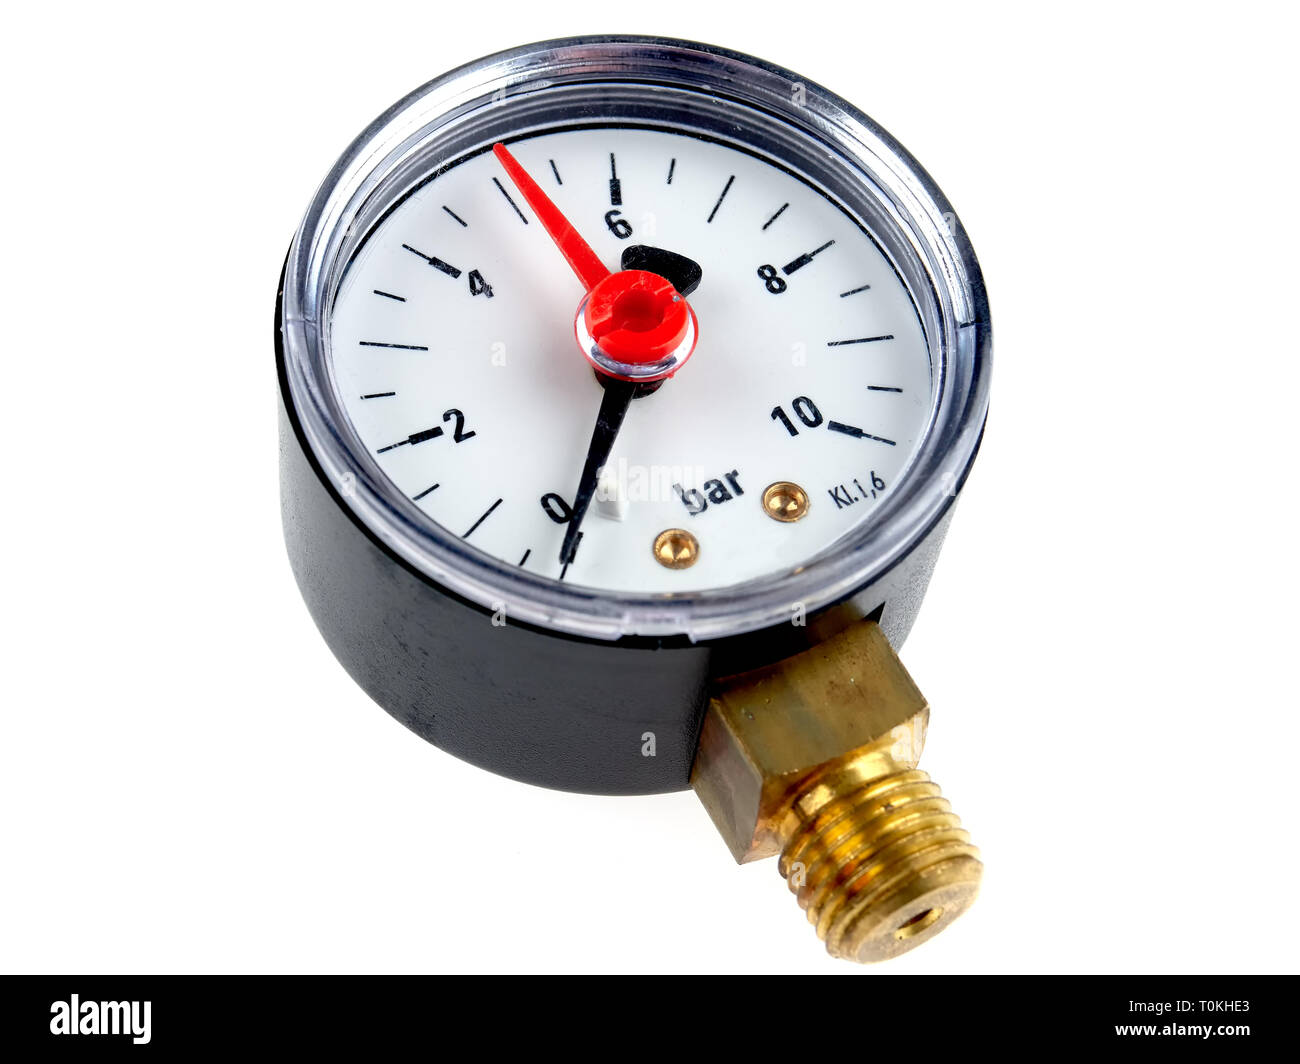 Manometro di pressione o manometro per acqua impianti pompa, isolato su bianco Foto Stock